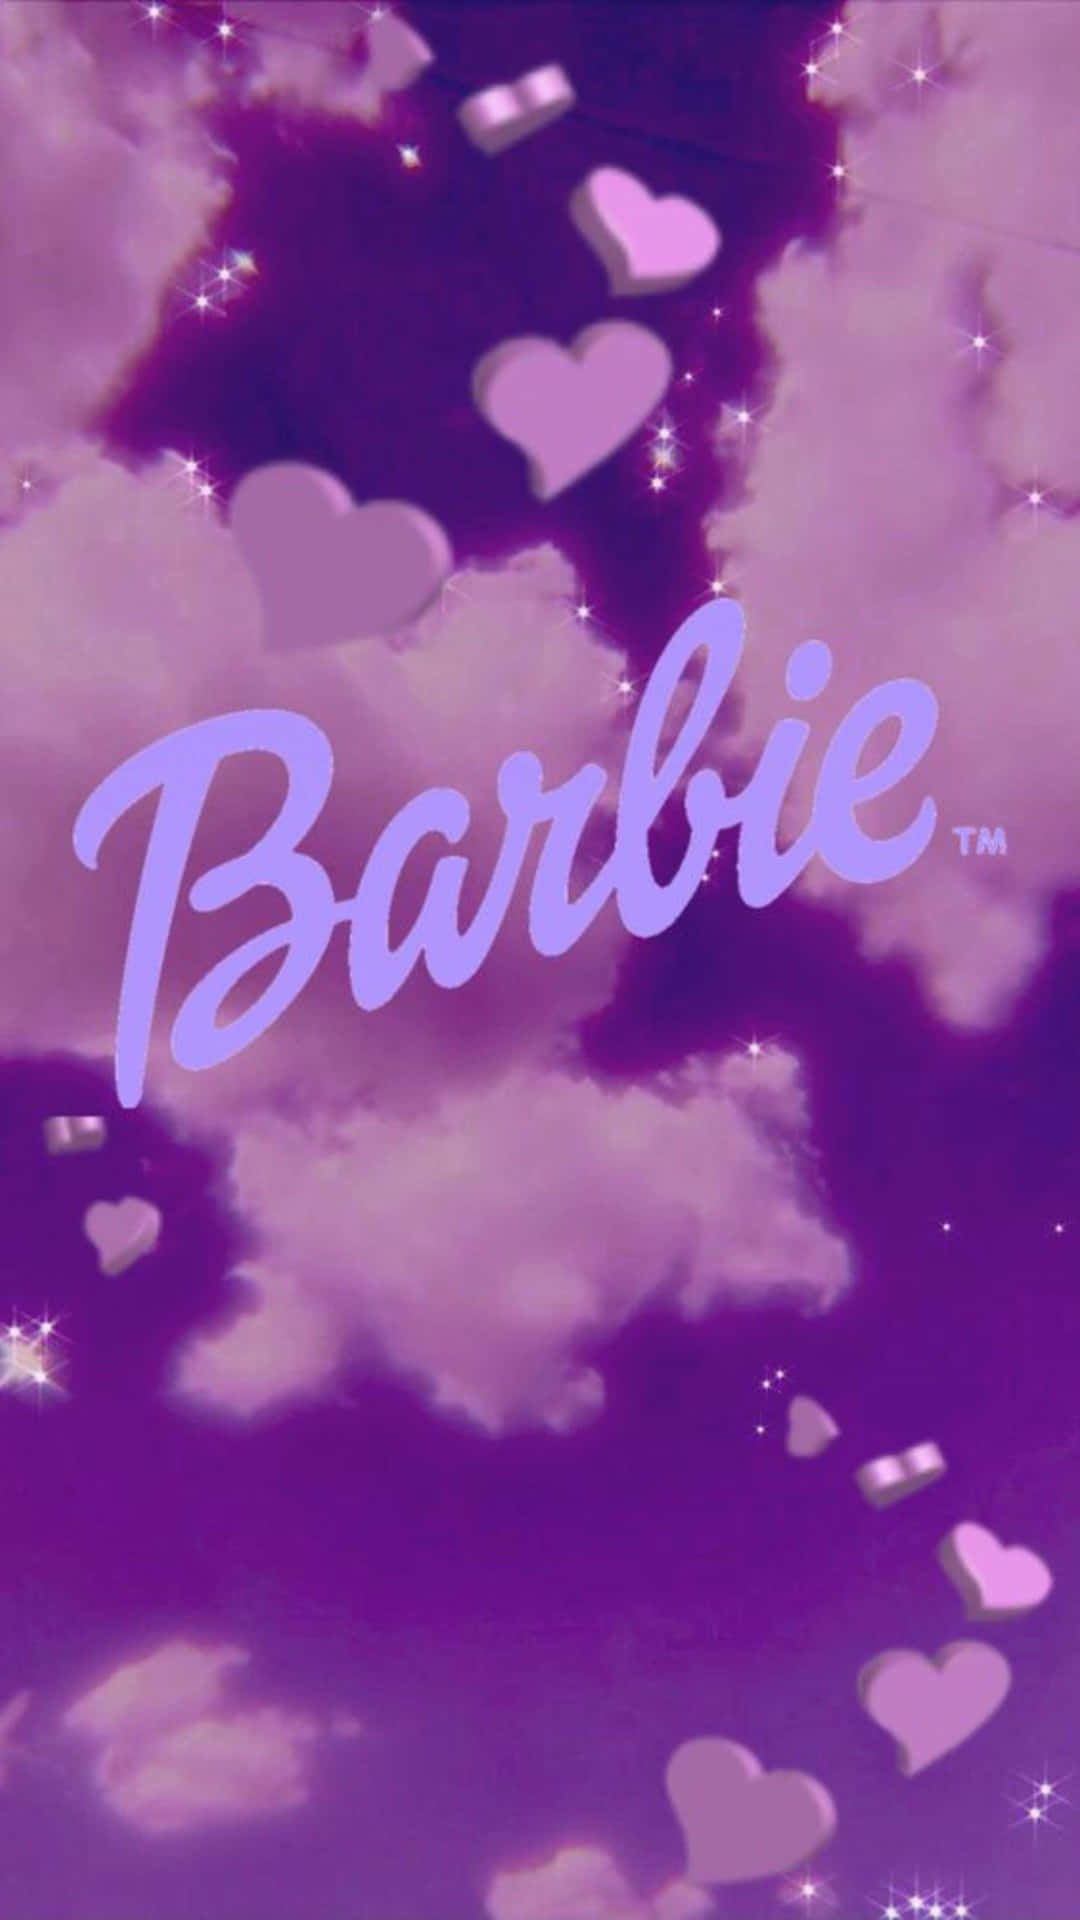 Barbie Logo Purple Hearts Aesthetic Wallpaper